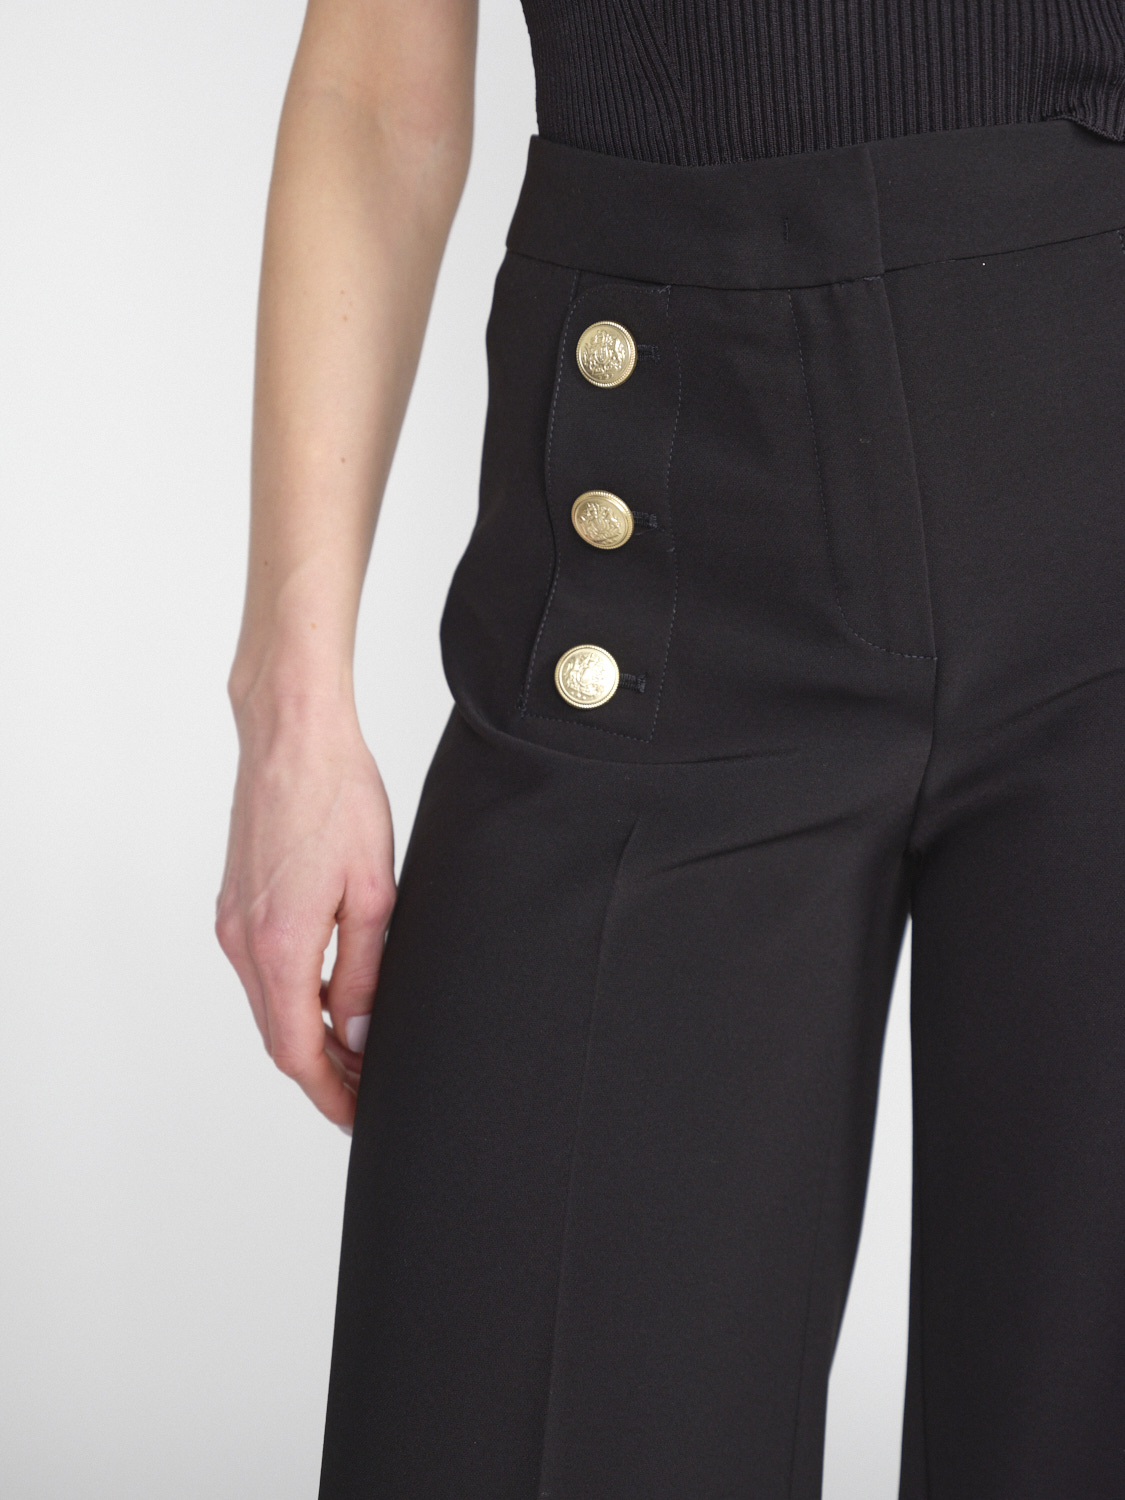 Seductive Bridget – Stretchige Hose mit goldfarbenen Knopfdetails   negro 38